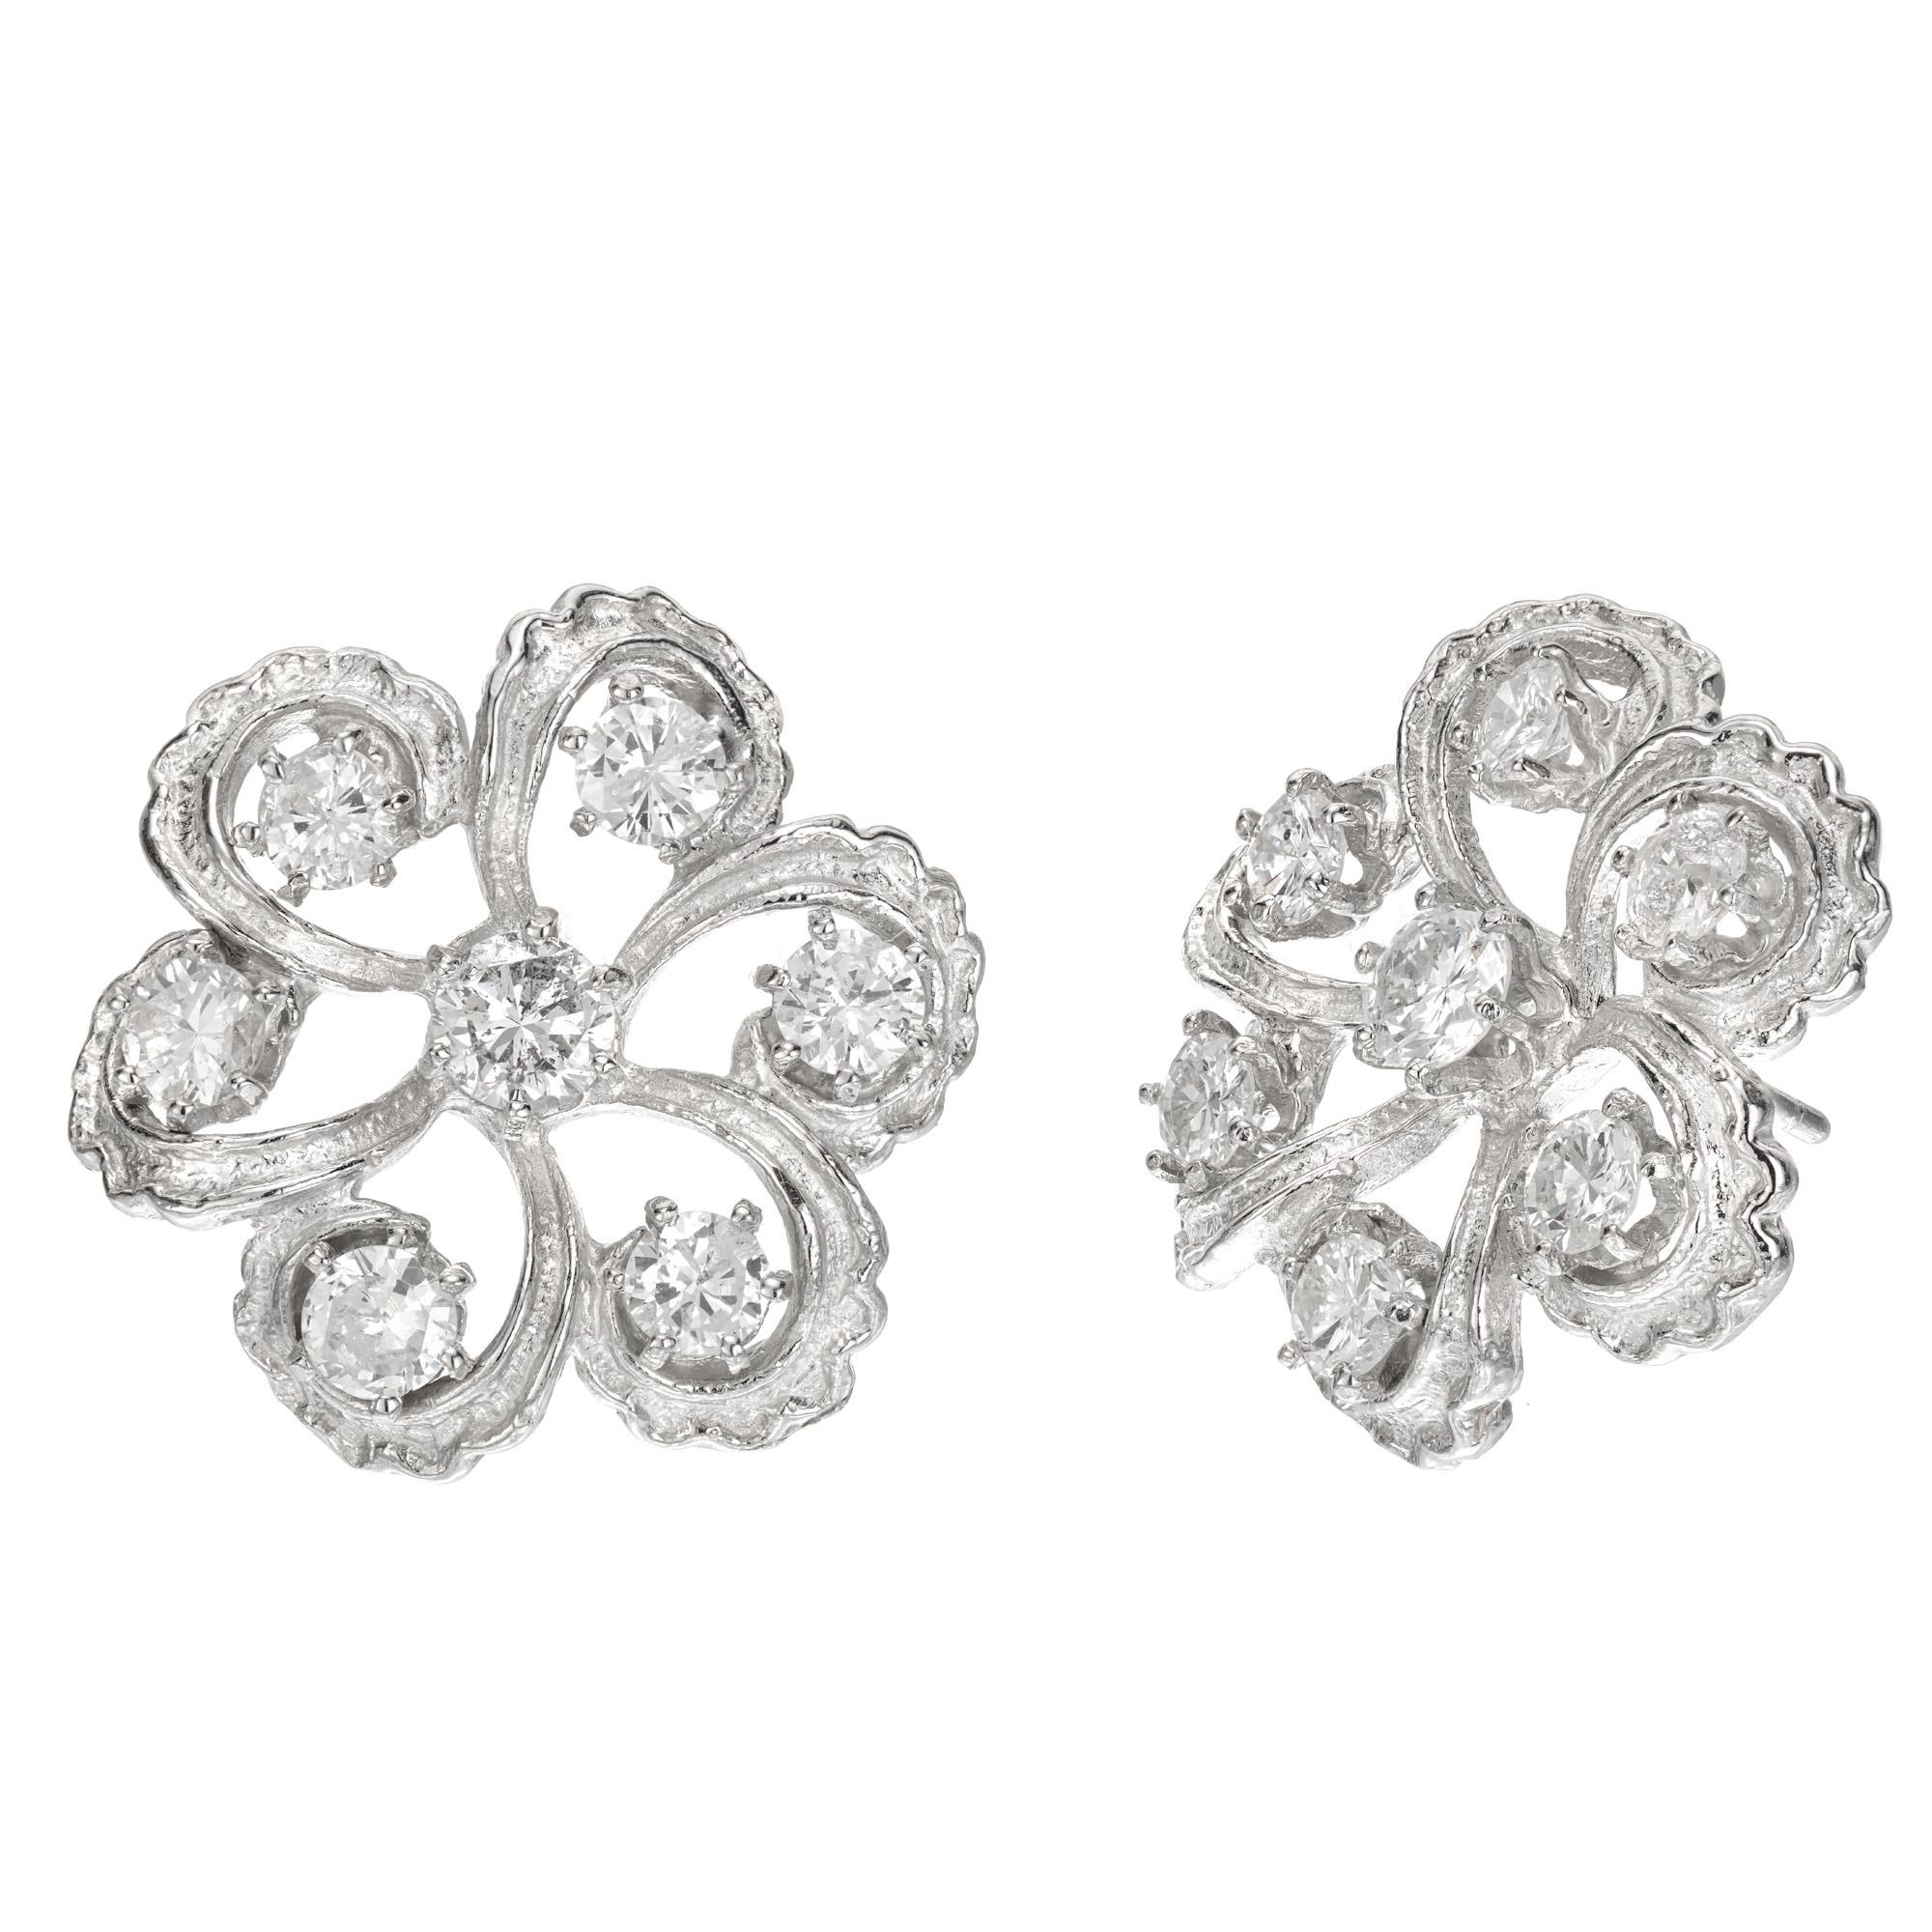 Boucles d'oreilles en diamant de forme circulaire datant de 1930 à 1940. 14 diamants de taille ronde de transition sertis dans des montures en platine texturées et détaillées à la main. Dos de sécurité en platine de grande taille.

12 diamants ronds